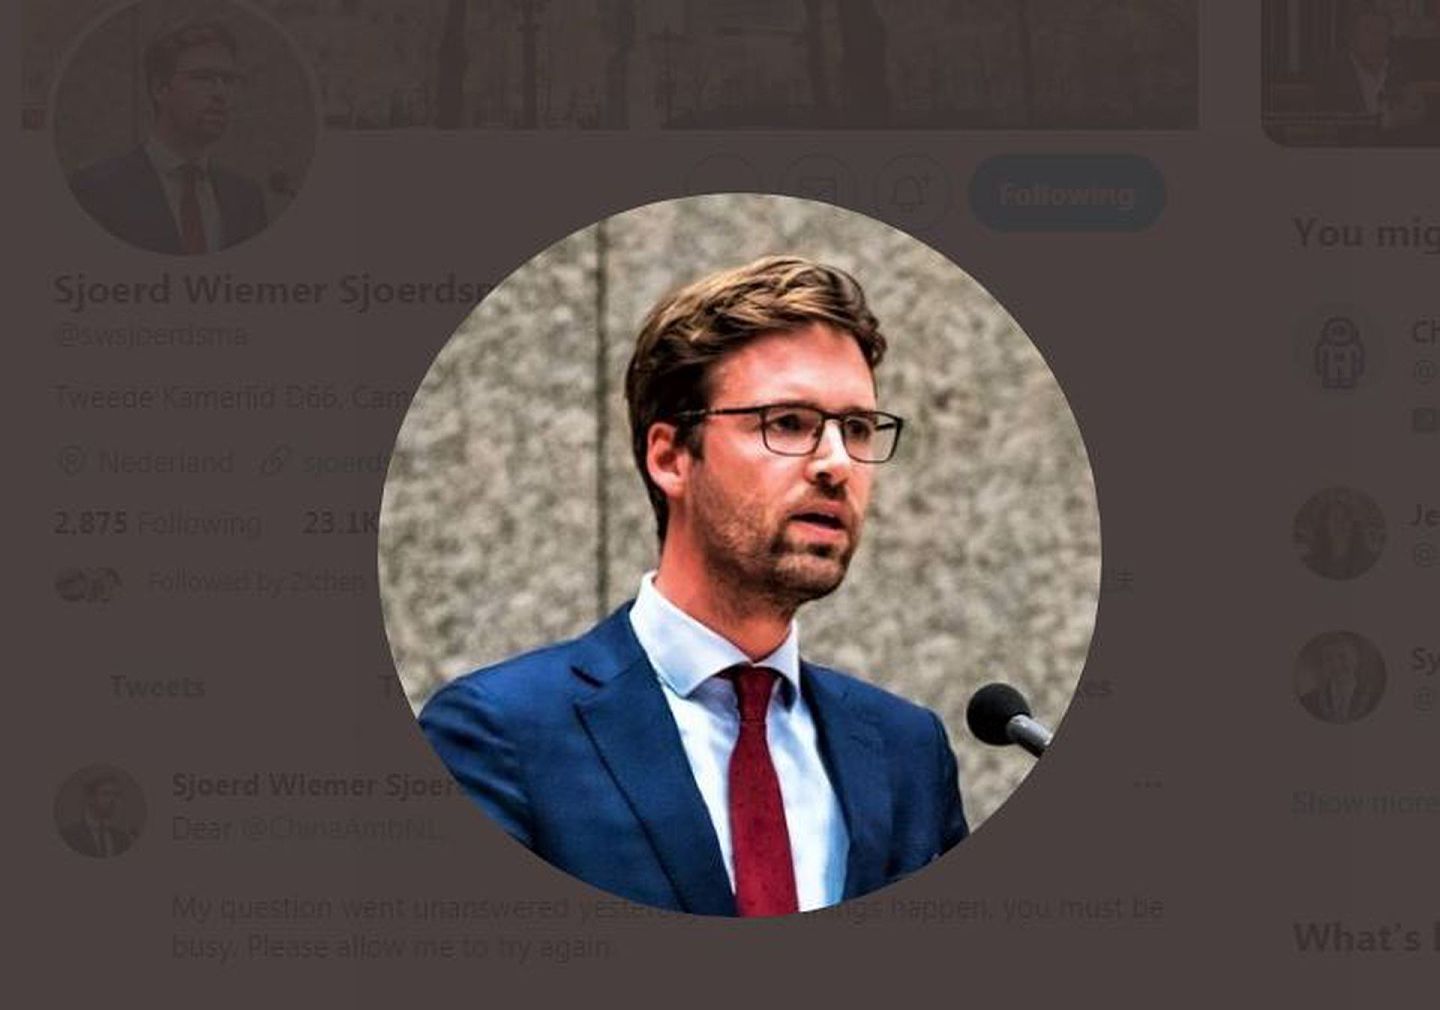 这是荷兰议会议员舍尔茨玛（Sjoerd Wiemer Sjoerdsma）。（Twitter@Sjoerd Wiemer Sjoerdsma截图）